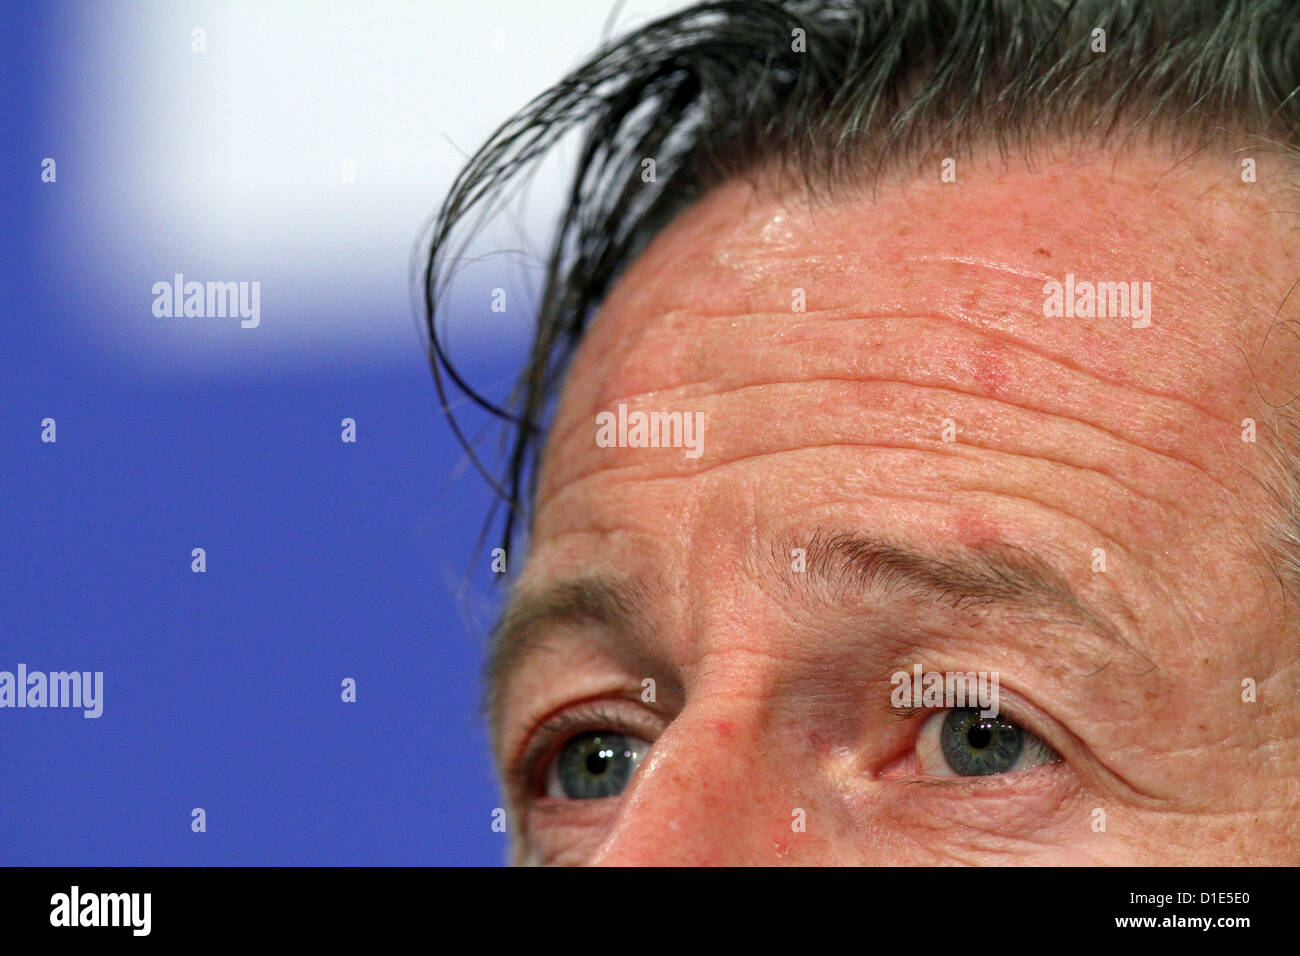 Direttore sportivo Horst Heldt da FC Schalke 04 presenta il nuovo allenatore Jens Keller nel corso di una conferenza stampa a Gelsenkirchen, Germania, 16 dicembre 2012. Foto: Kevin Kurek Foto Stock